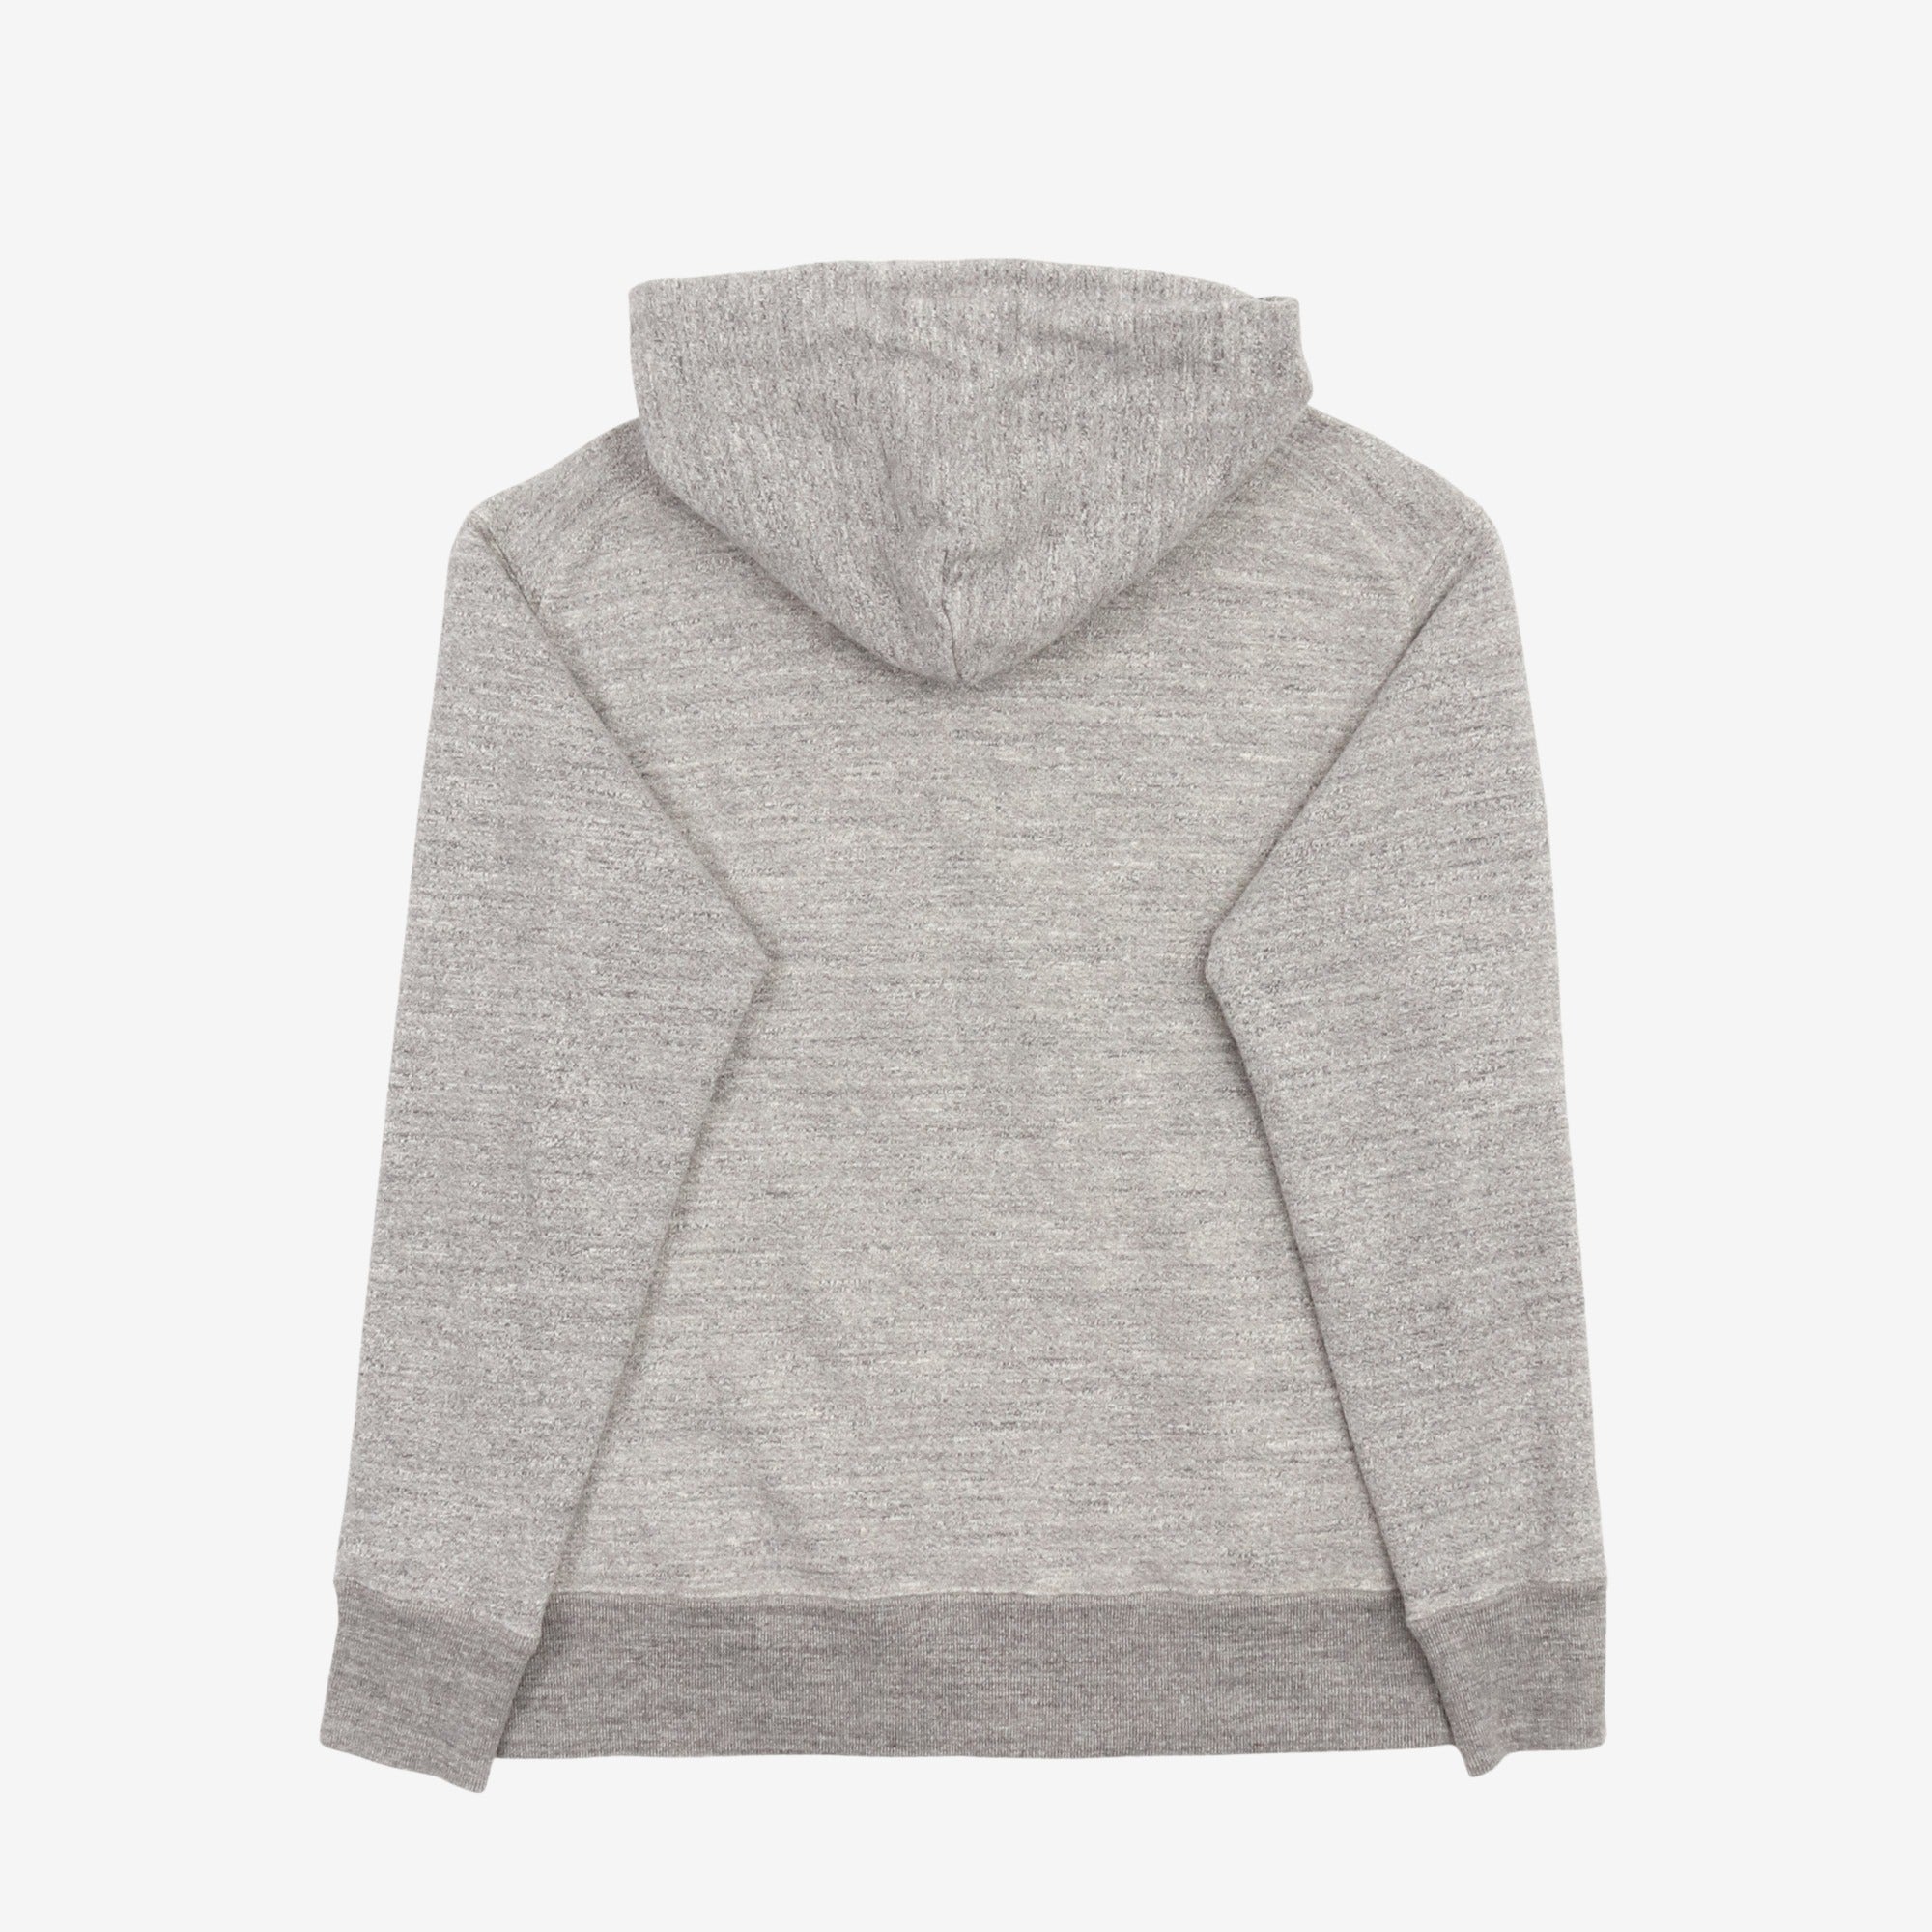 Marl Hooded Sweatshirt